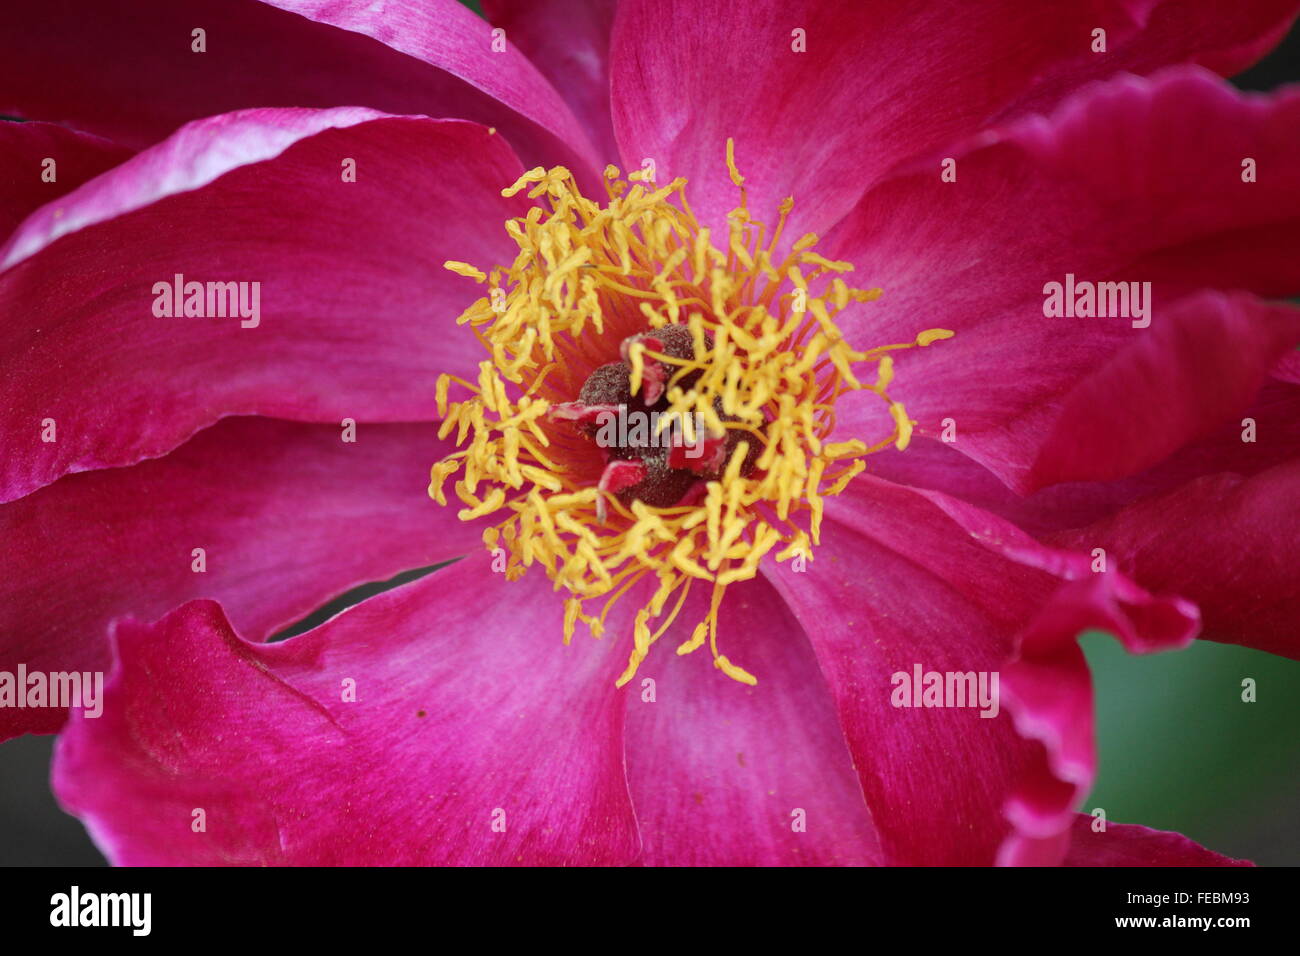 Rosa scuro fiore, close up degli stami Foto Stock